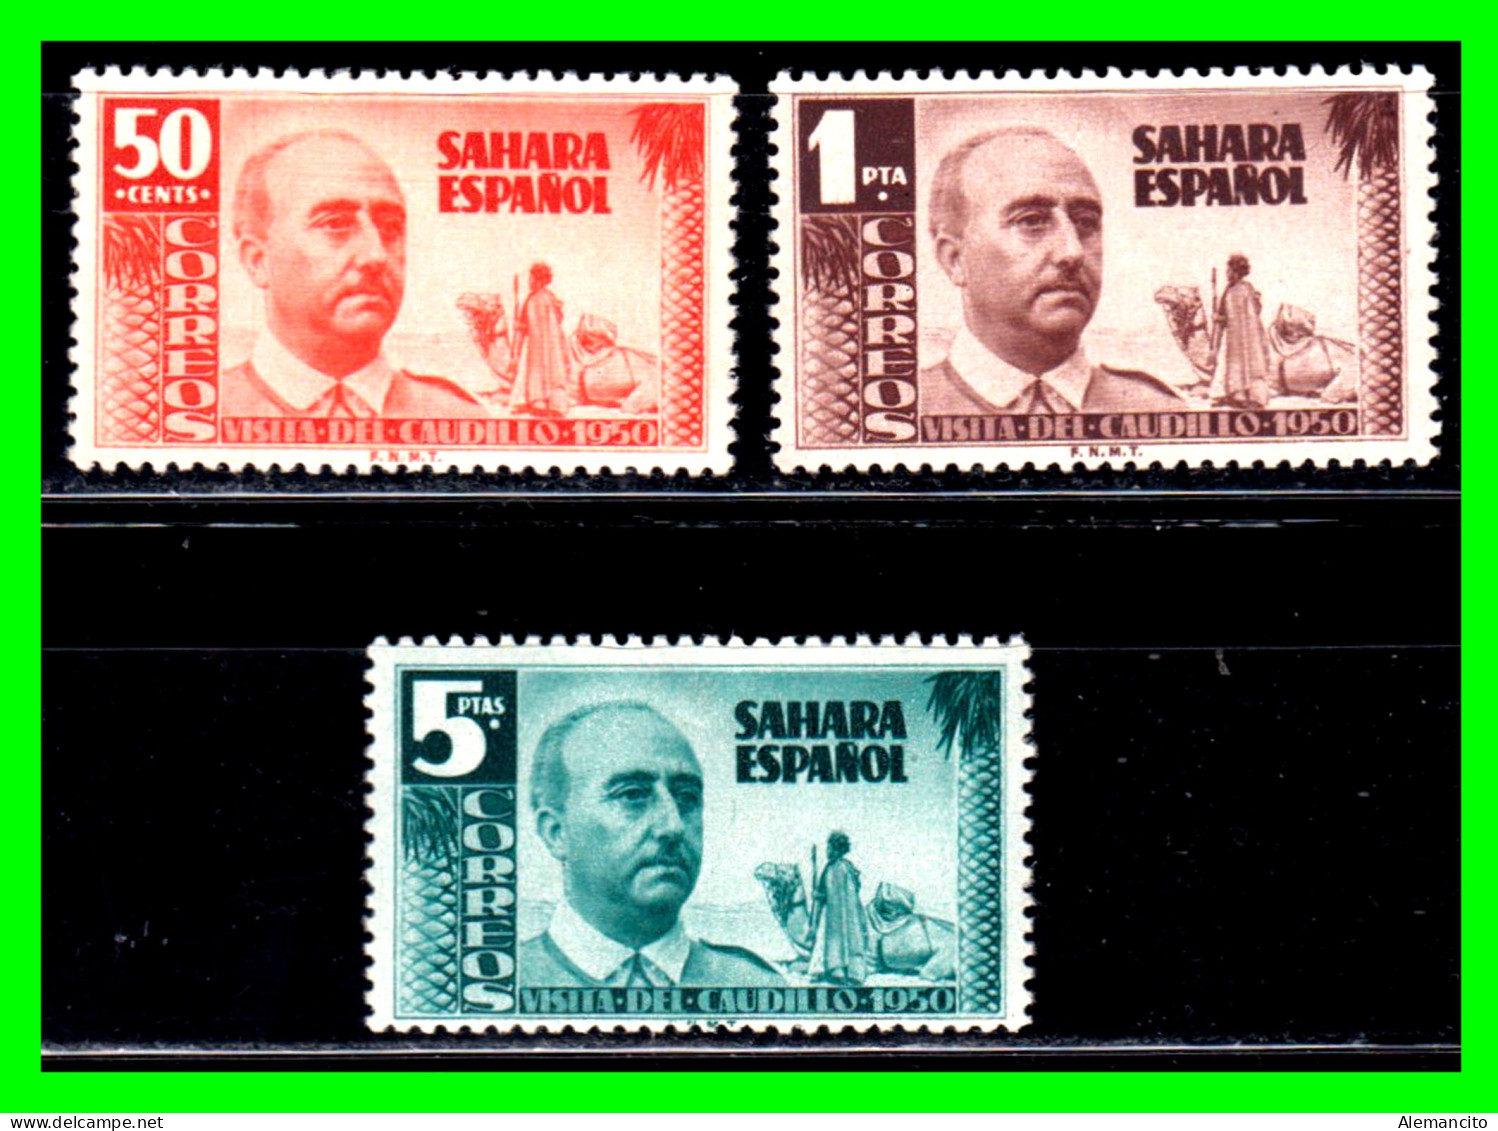 ESPAÑA COLONIAS ESPAÑOLAS (SAHARA ESPAÑOL – AFRICA ) SERIE SELLOS DEL AÑO 1951 18 DE JULIO VISITA DE FRANCO  - NUEVOS - - Sahara Español